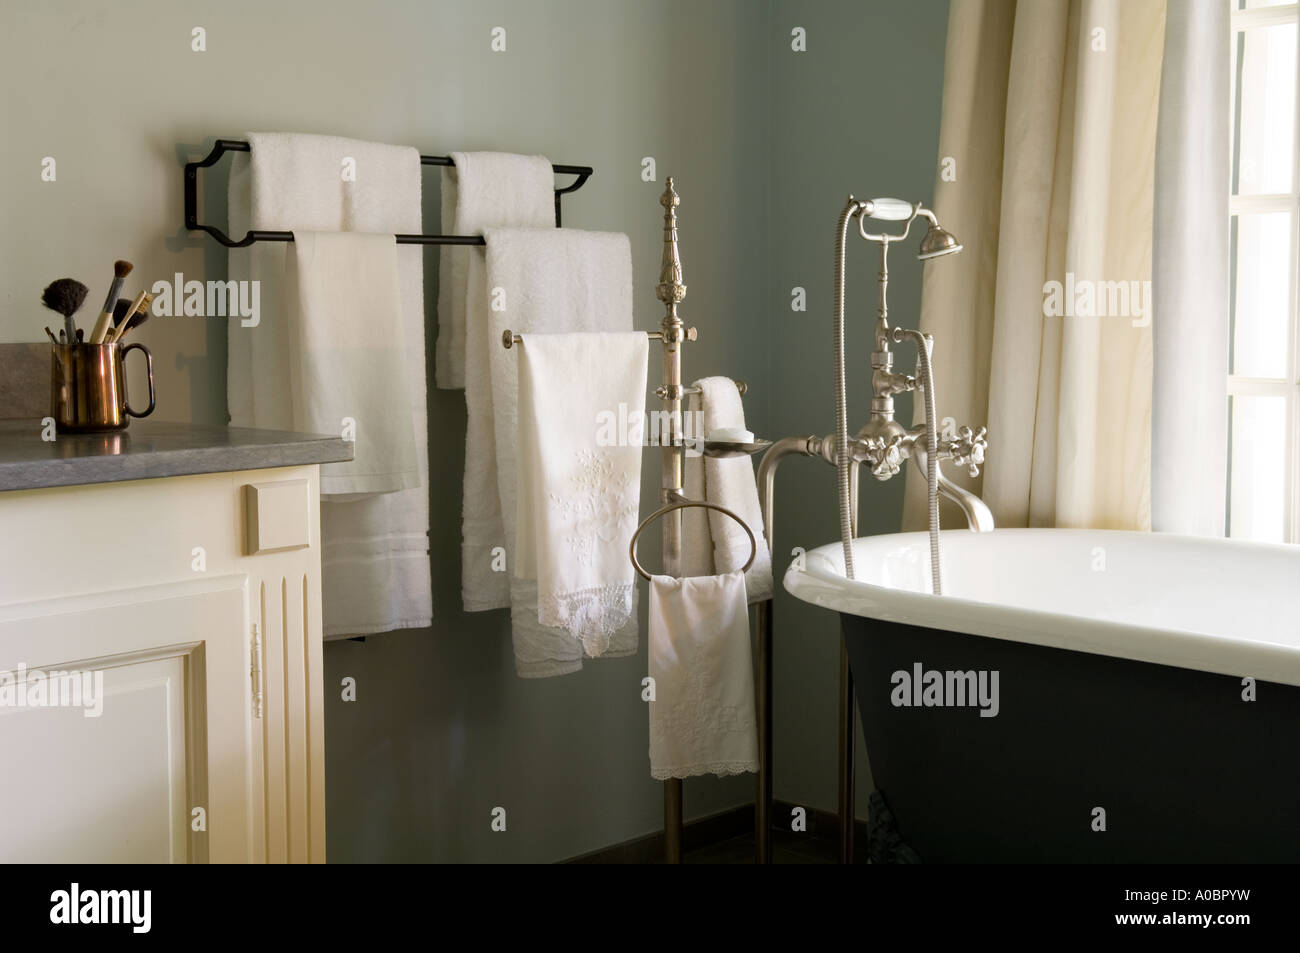 Vue de salle de bains de luxe avec baignoire sur pieds et les serviettes blanches Banque D'Images